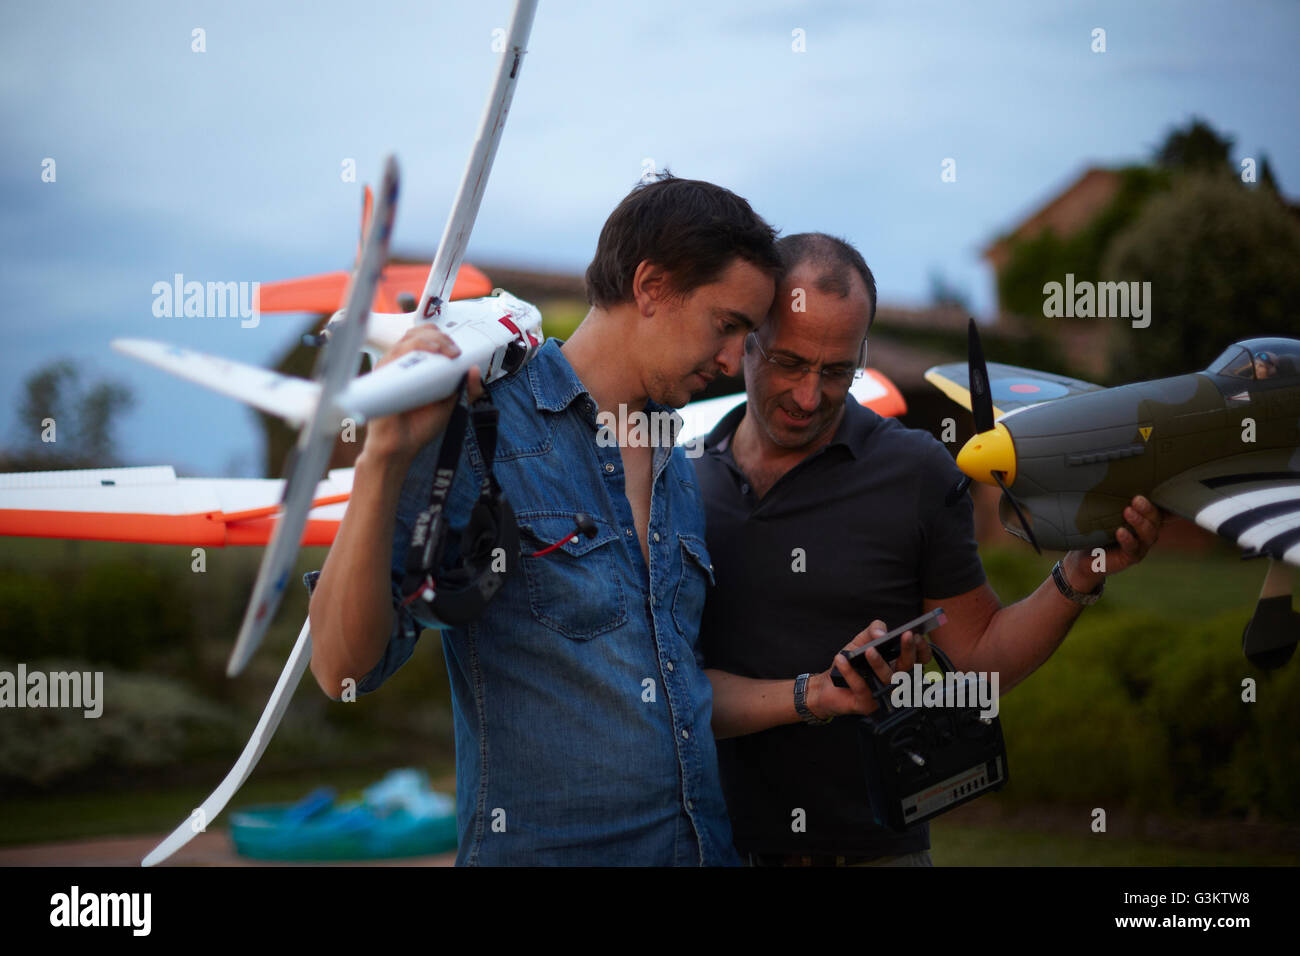 Dos amigos varones mantiene control remoto aviones, mirando el smartphone Foto de stock